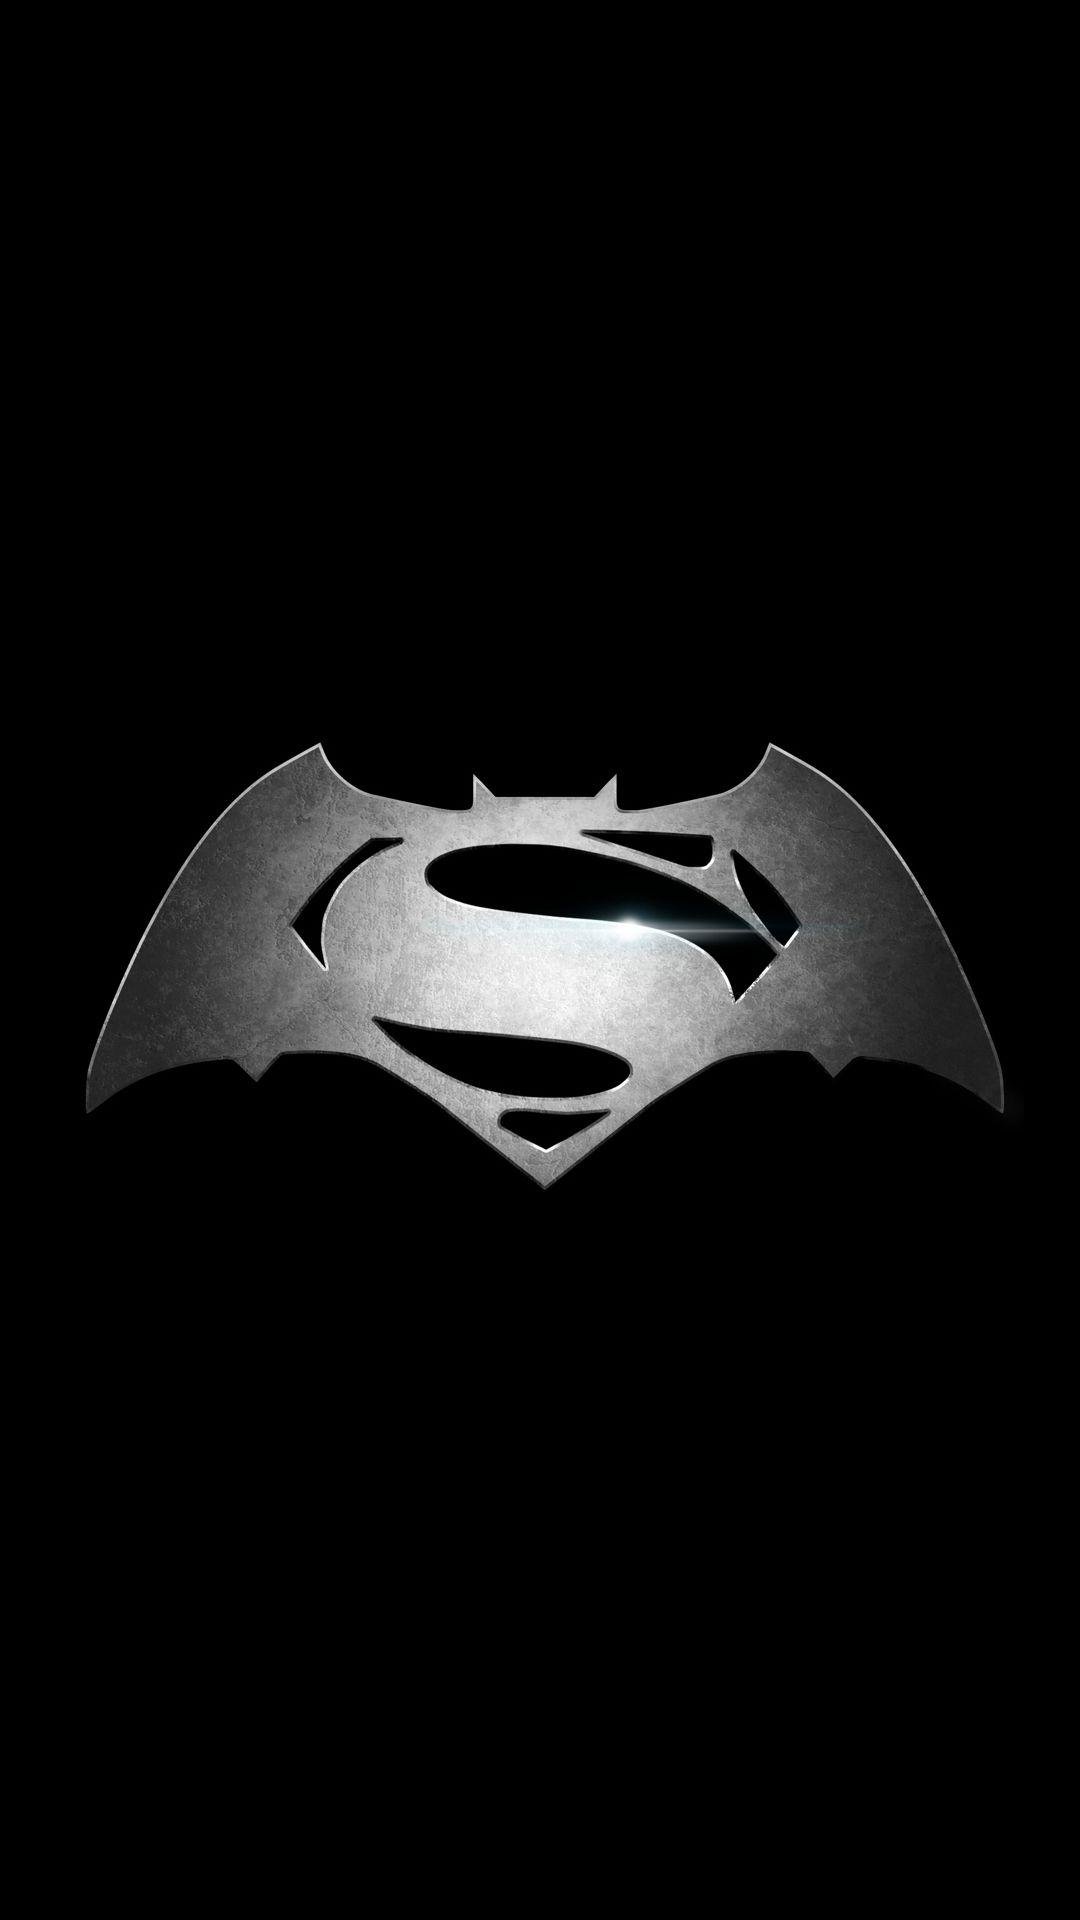 Black Superman Wallpaper & Black Superman Background Image